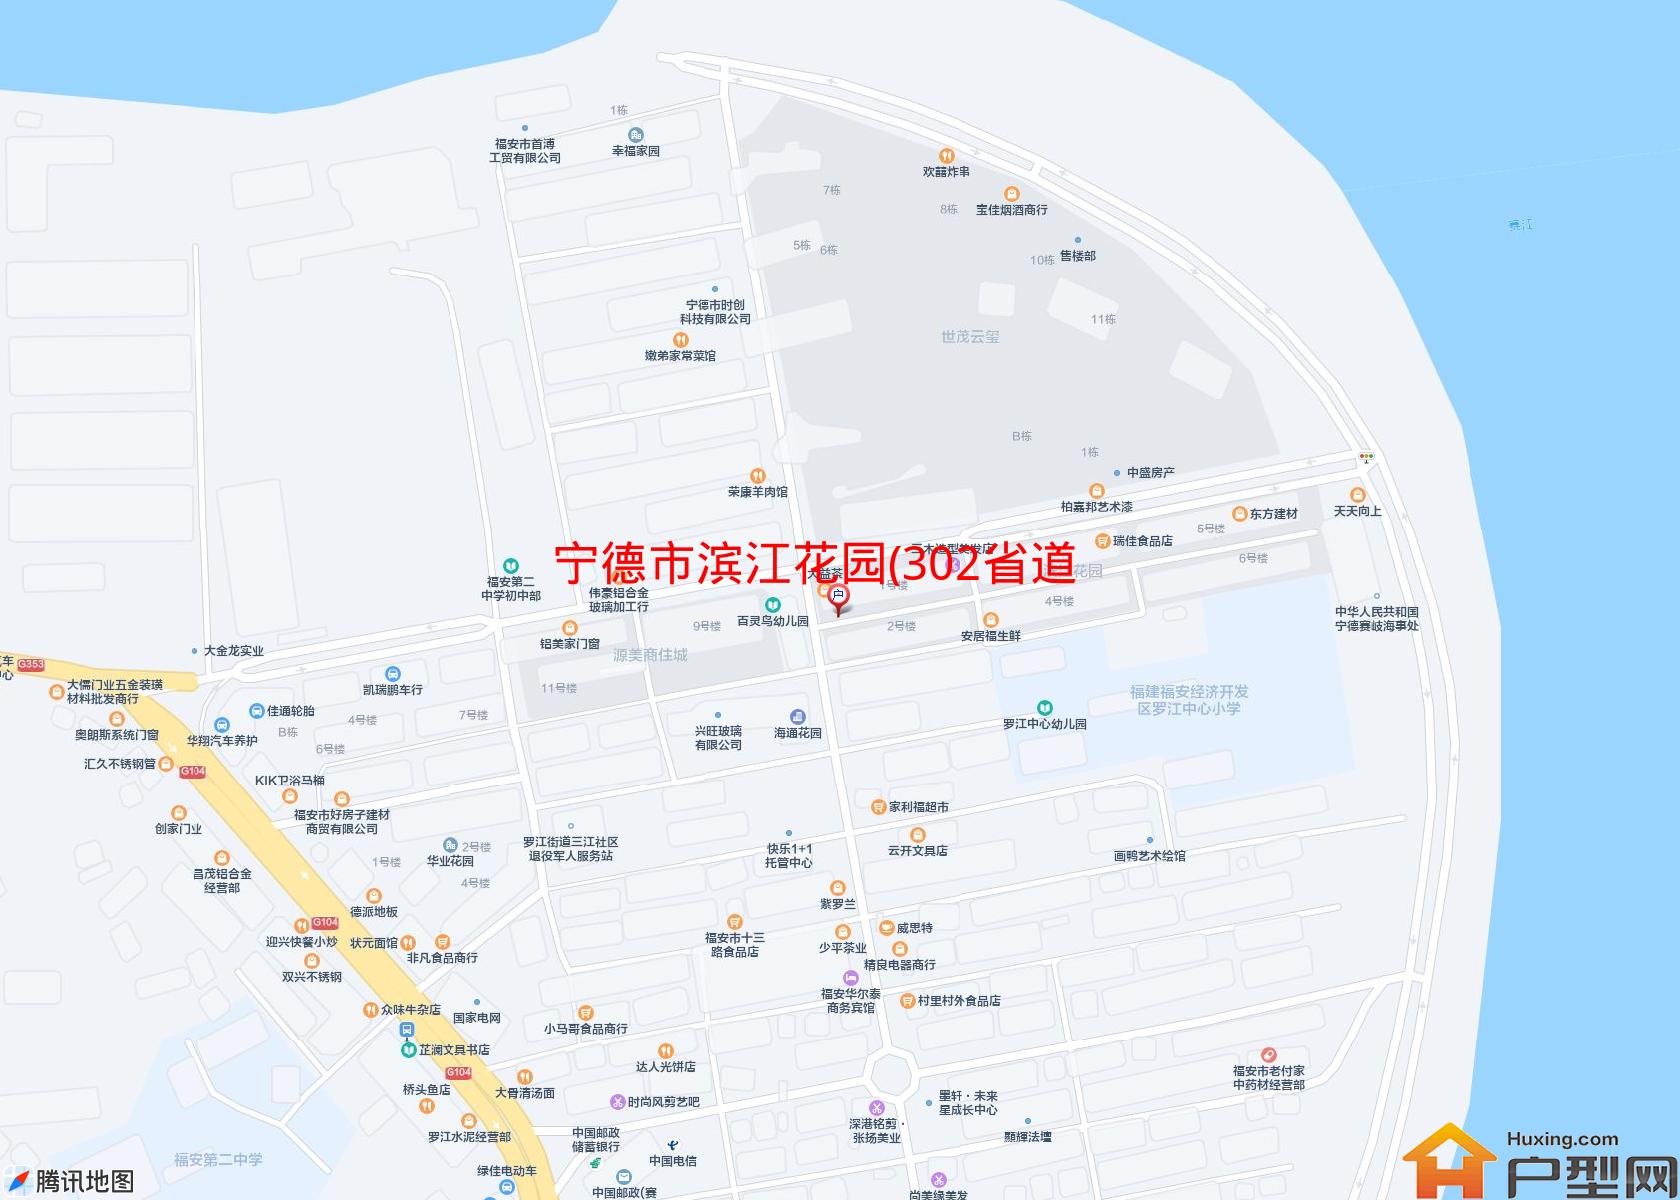 滨江花园(302省道)小区 - 户型网